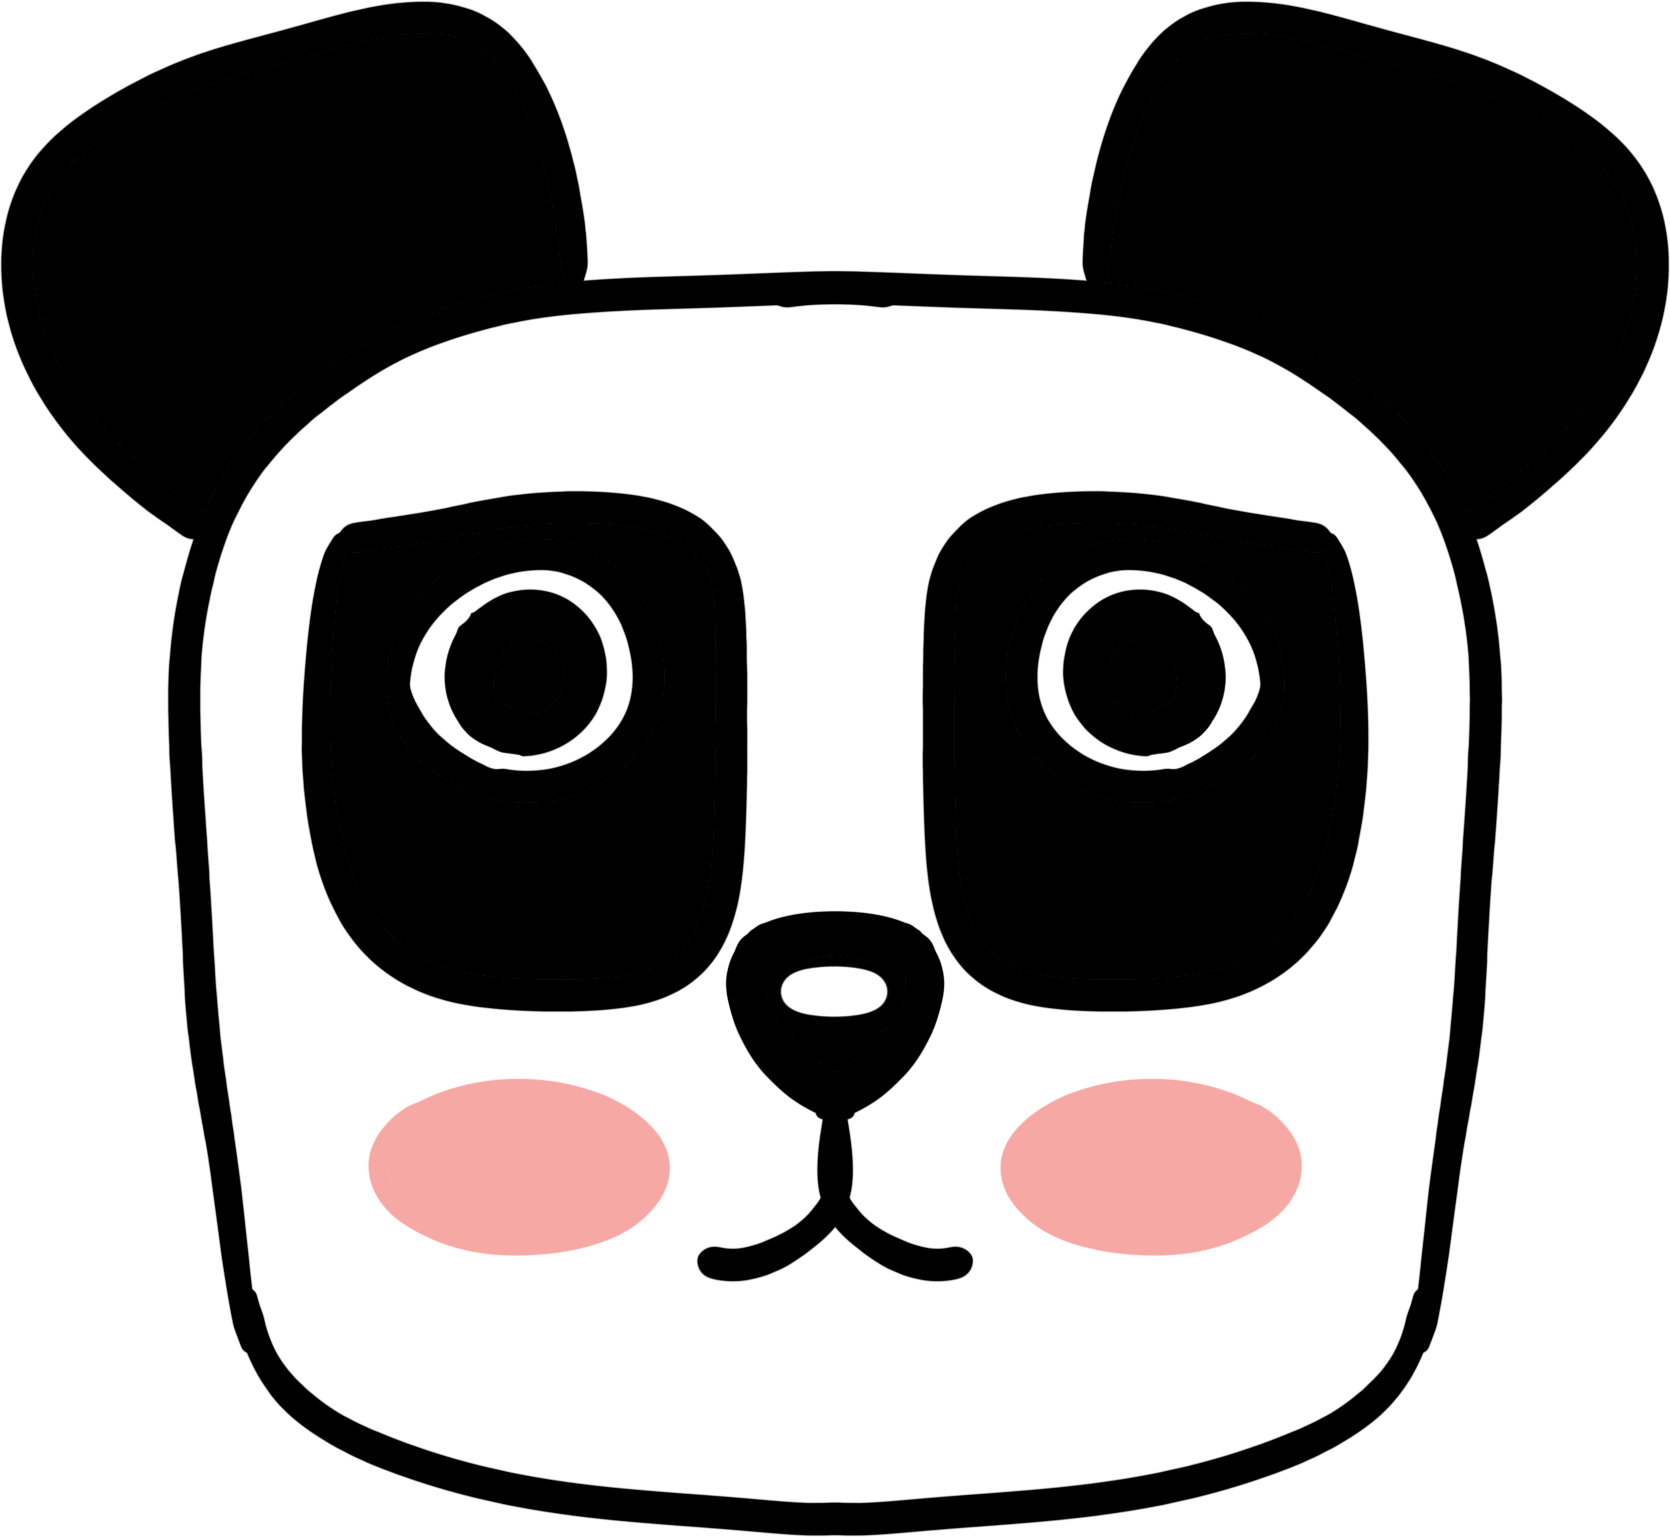 手繪大熊貓 可愛熊貓 黑白熊貓 坐著的大熊貓, 熊貓剪貼畫, 剪貼畫熊貓, 兔子熊貓素材圖案，PSD和PNG圖片免費下載